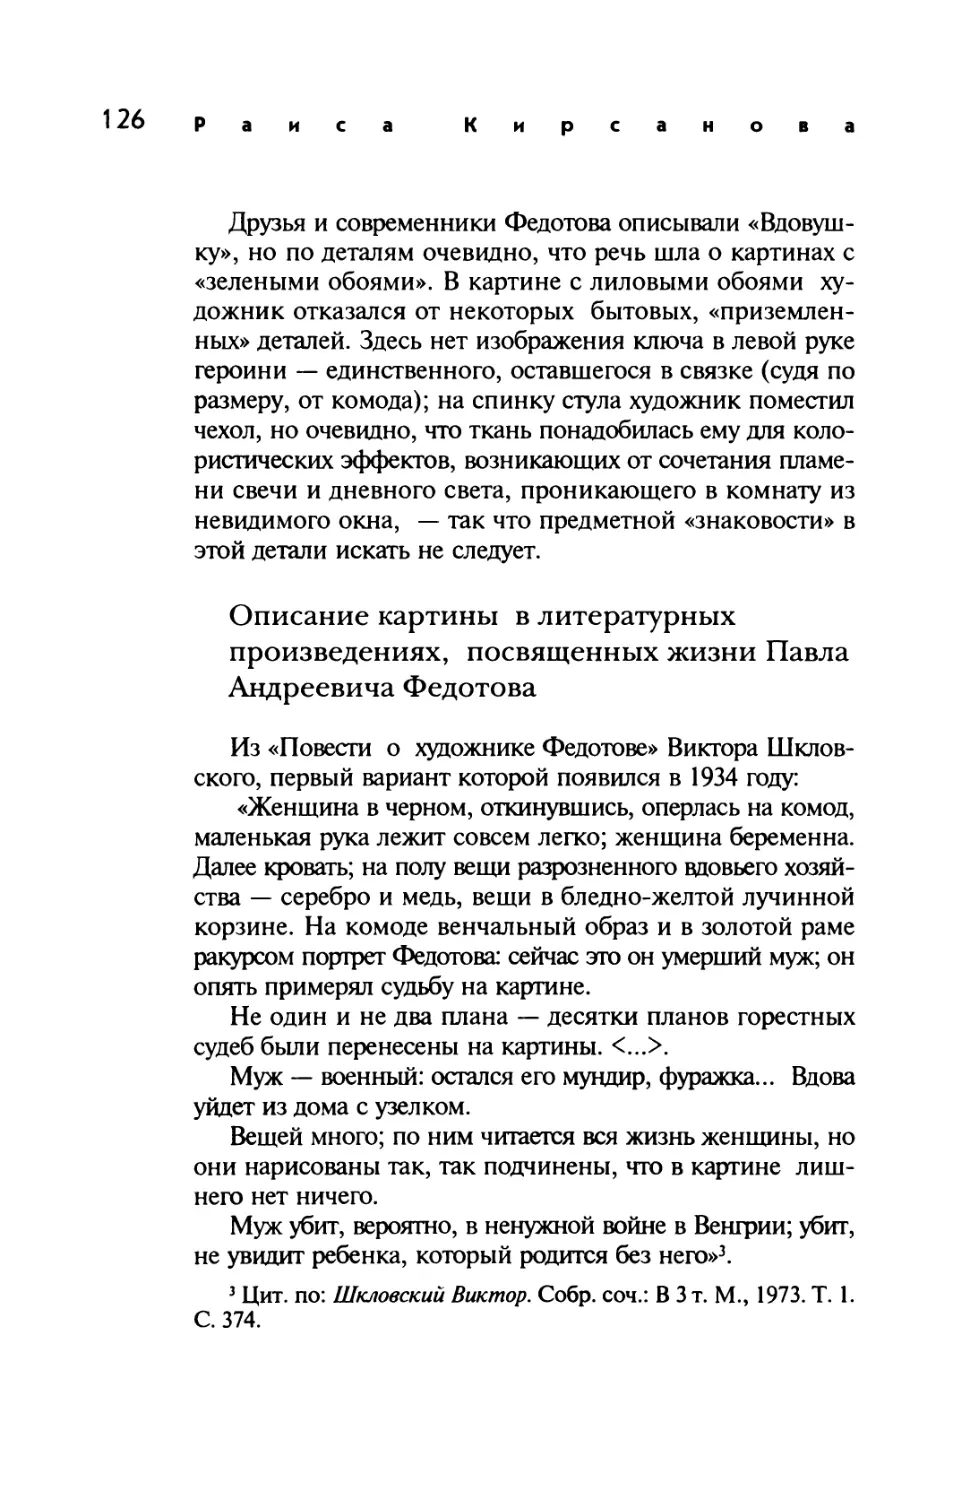 Описание картины в литературных произведениях, посвященных жизни Павла Андреевича Федотова